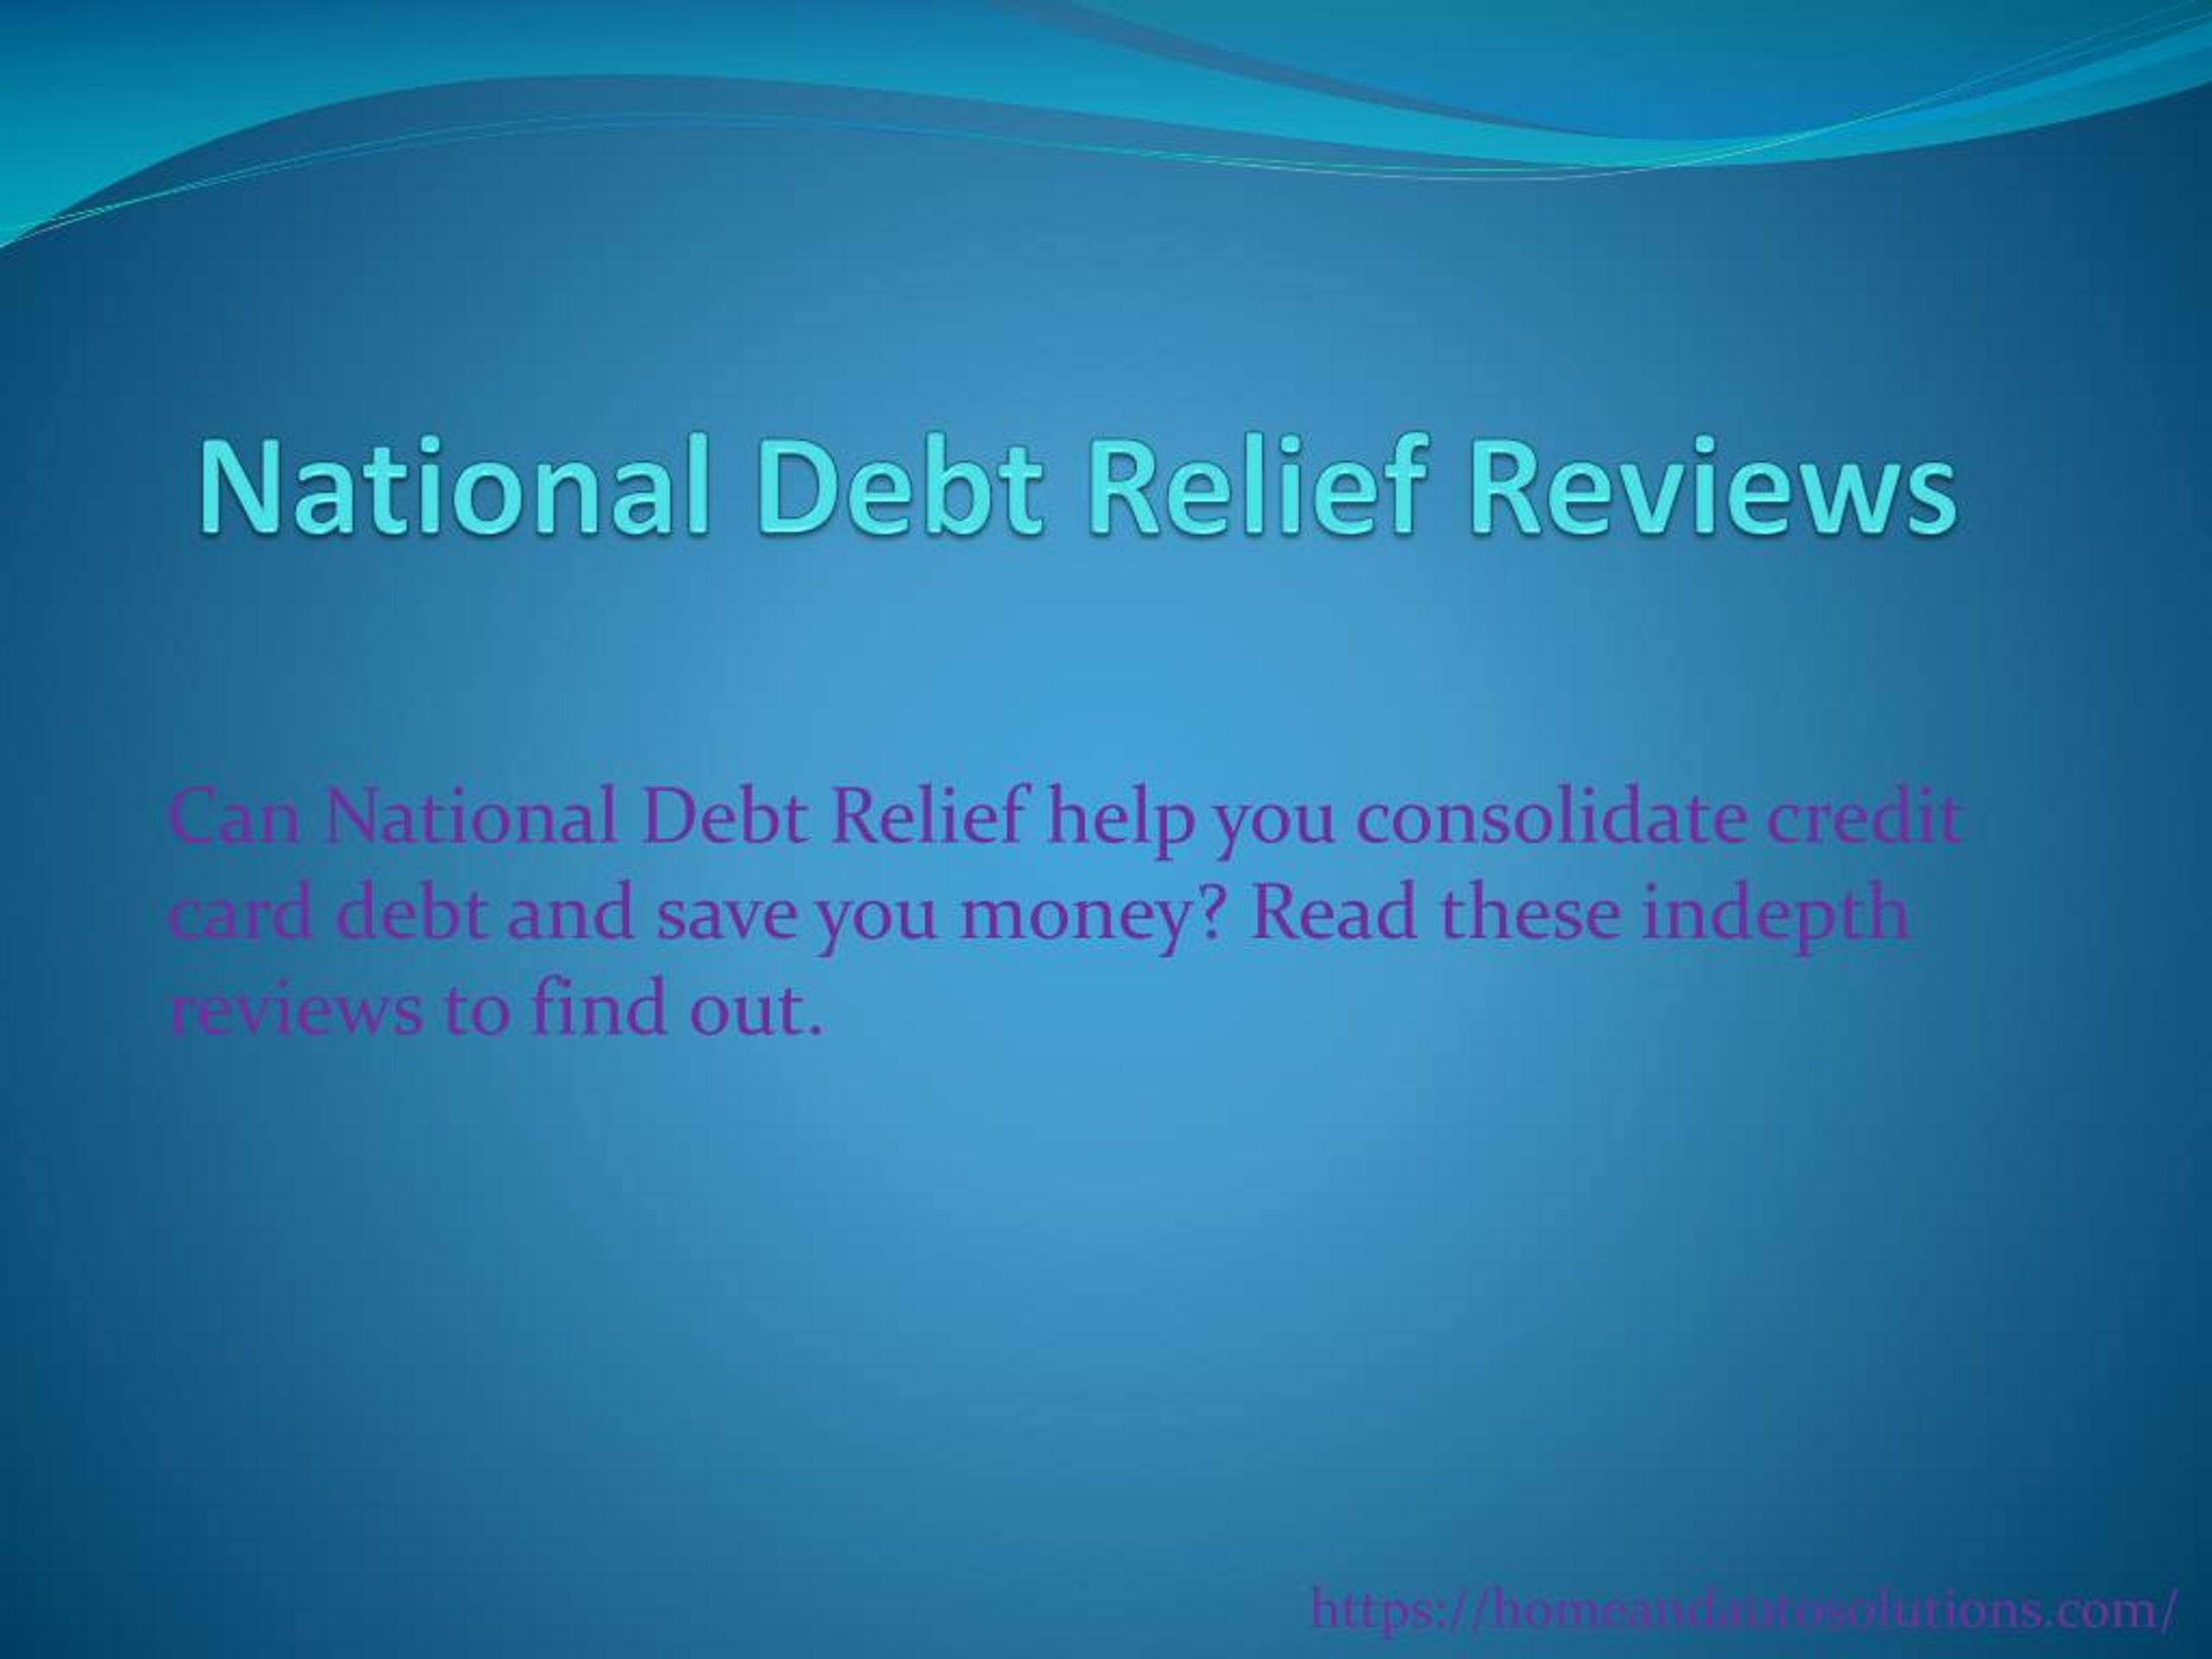 dom debt relief reviews 2021